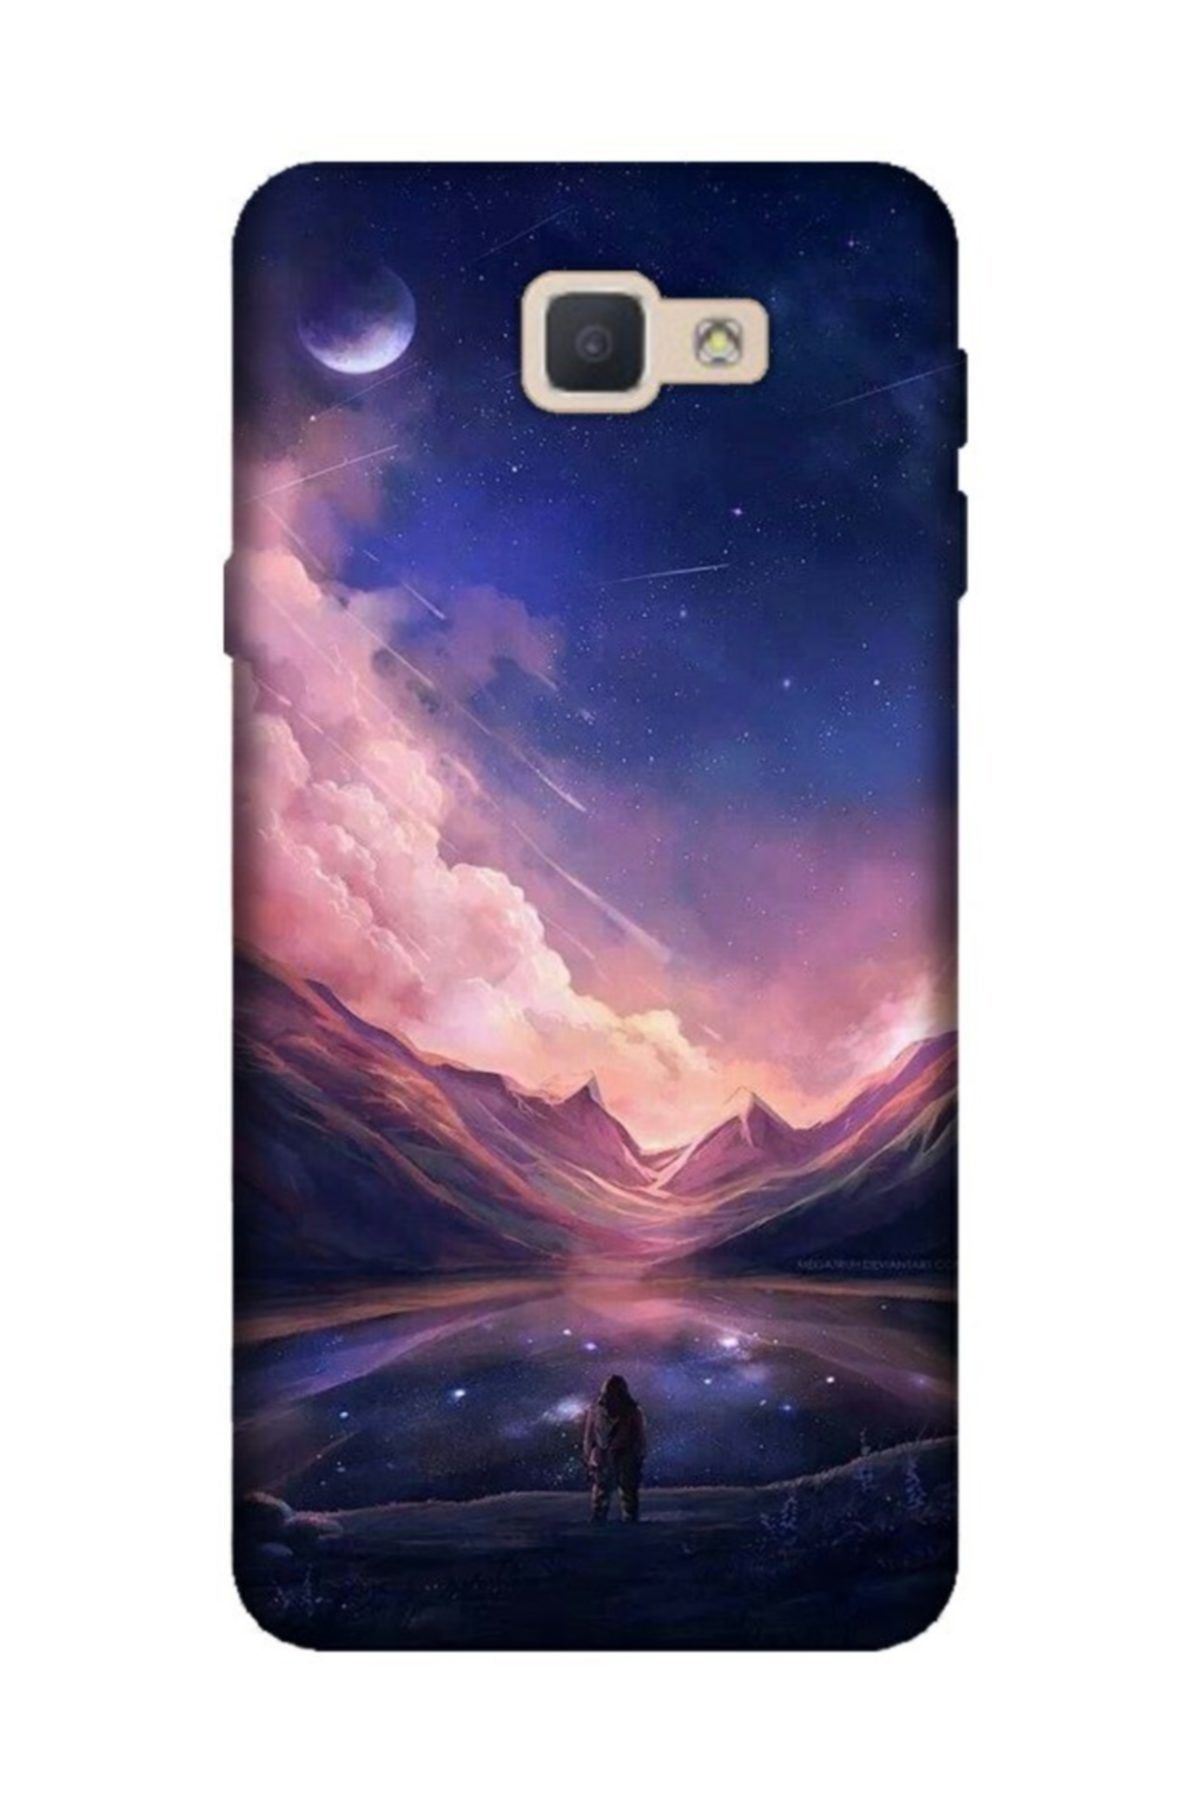 Cekuonline Samsung Galaxy J7 Prime (2) Kılıf Desenli Resimli Hd Silikon Telefon Kabı Kapak - Mars Life